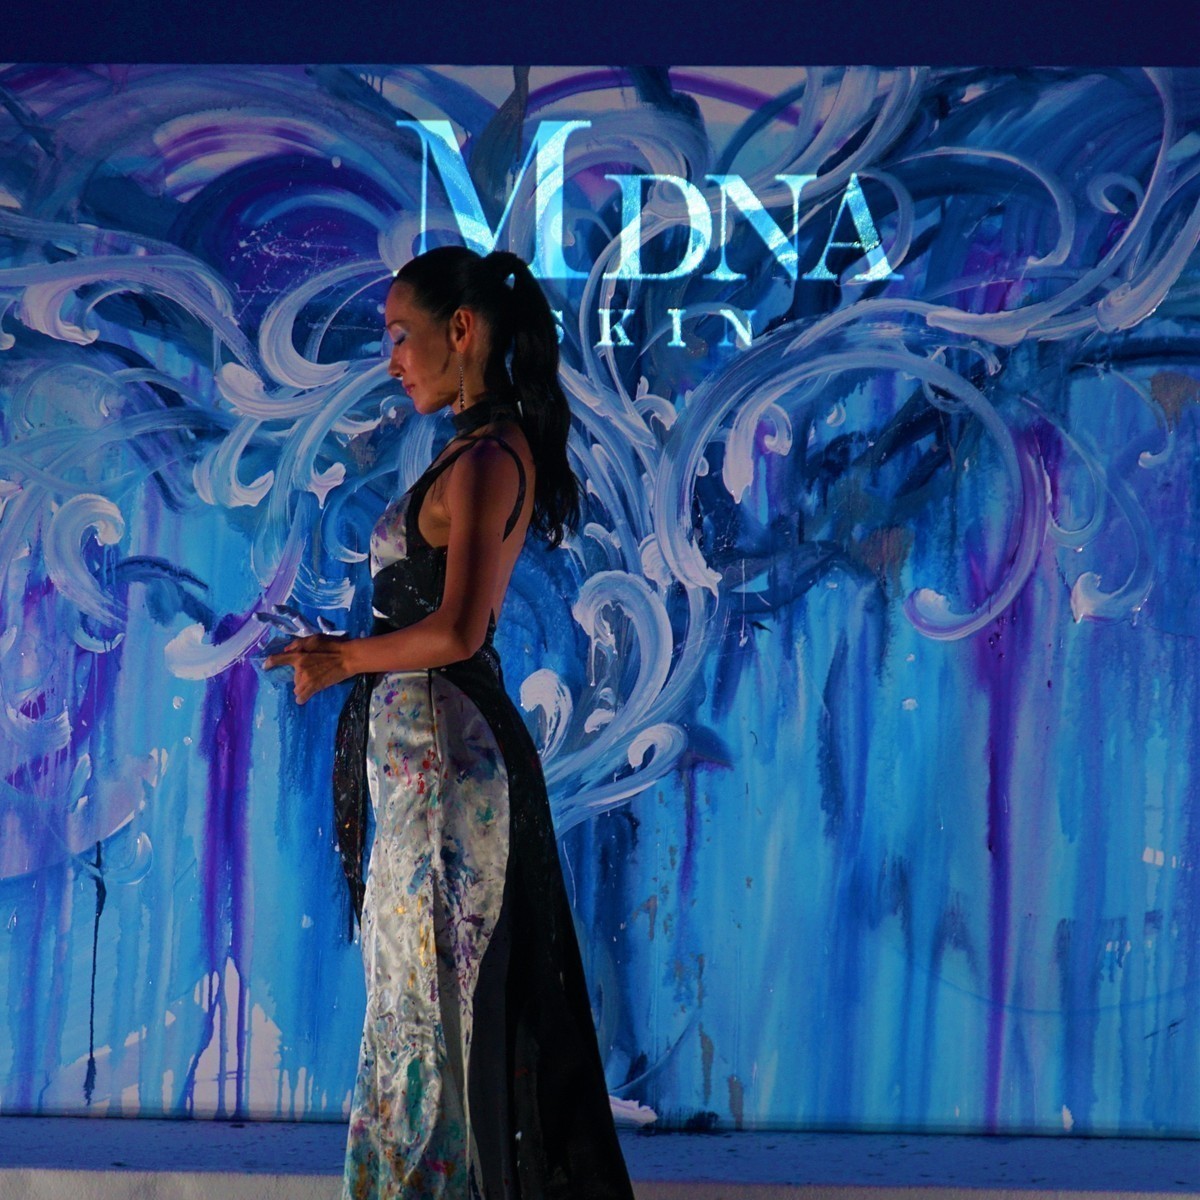 内側から美を追求する――"マドンナが共同開発"の「MDNA SKIN」新商品